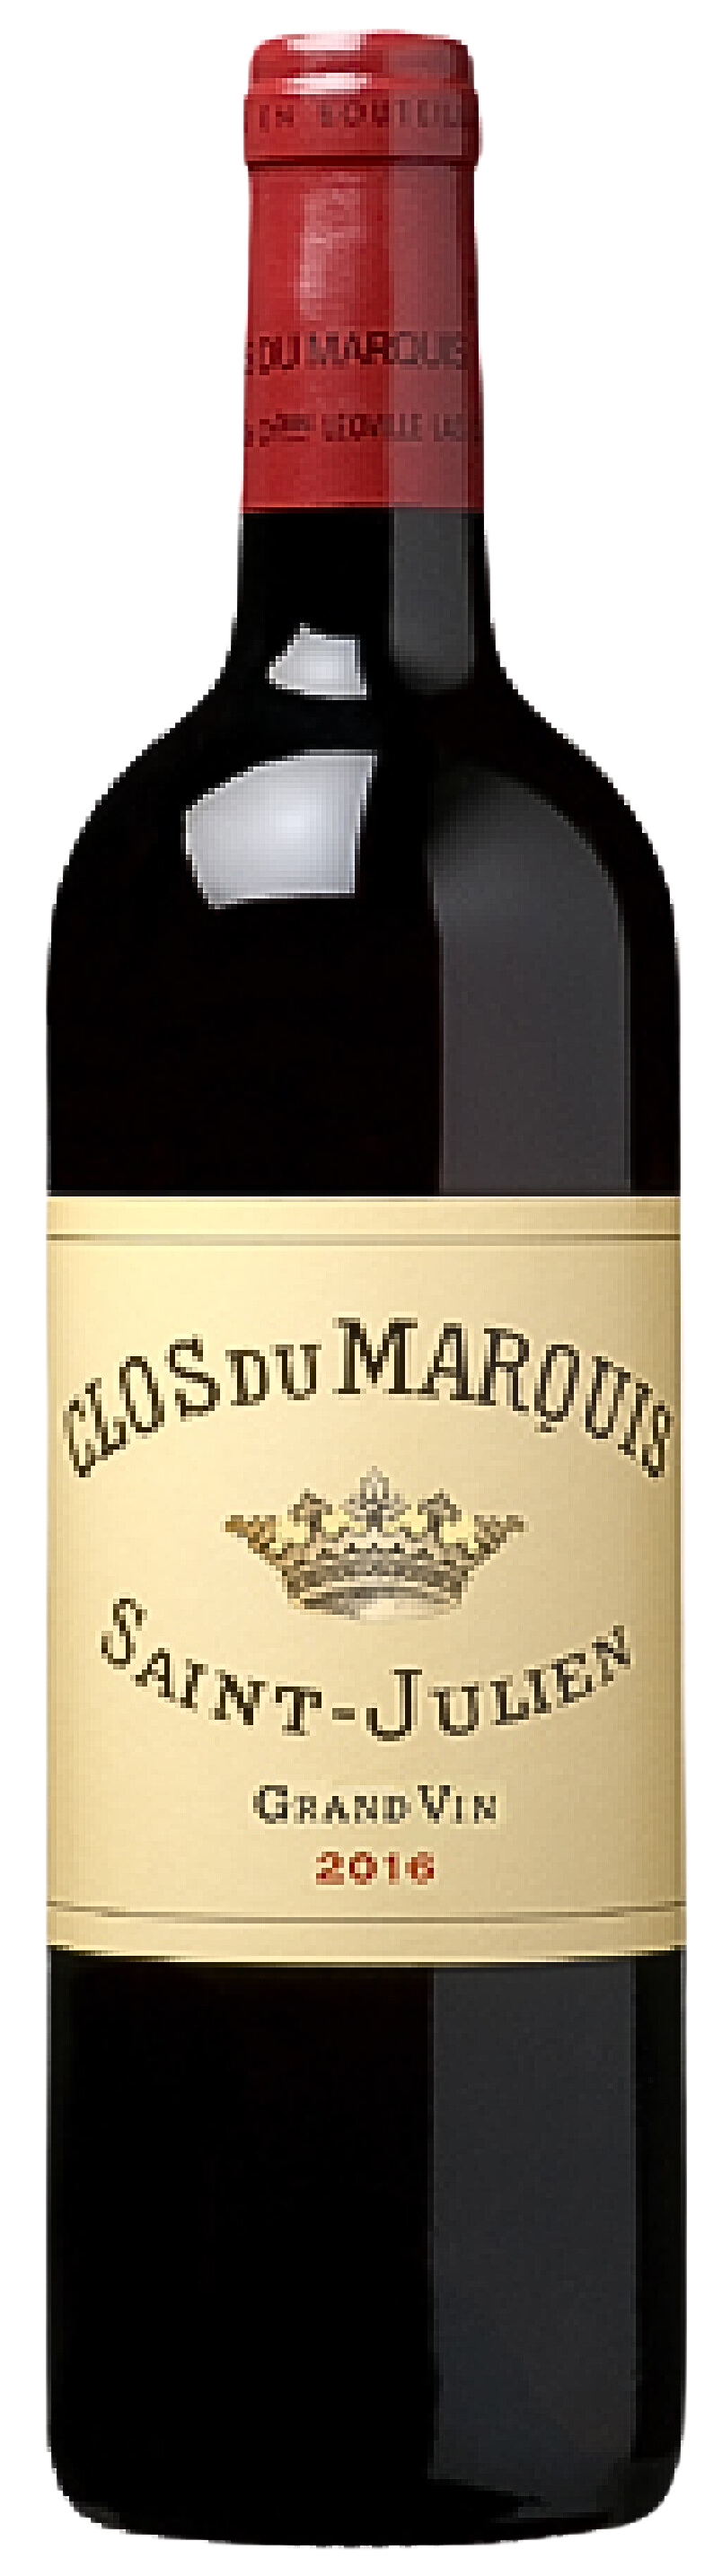 Clos du Marquis (by Leoville Las-Cases) 2016 (RP:94)